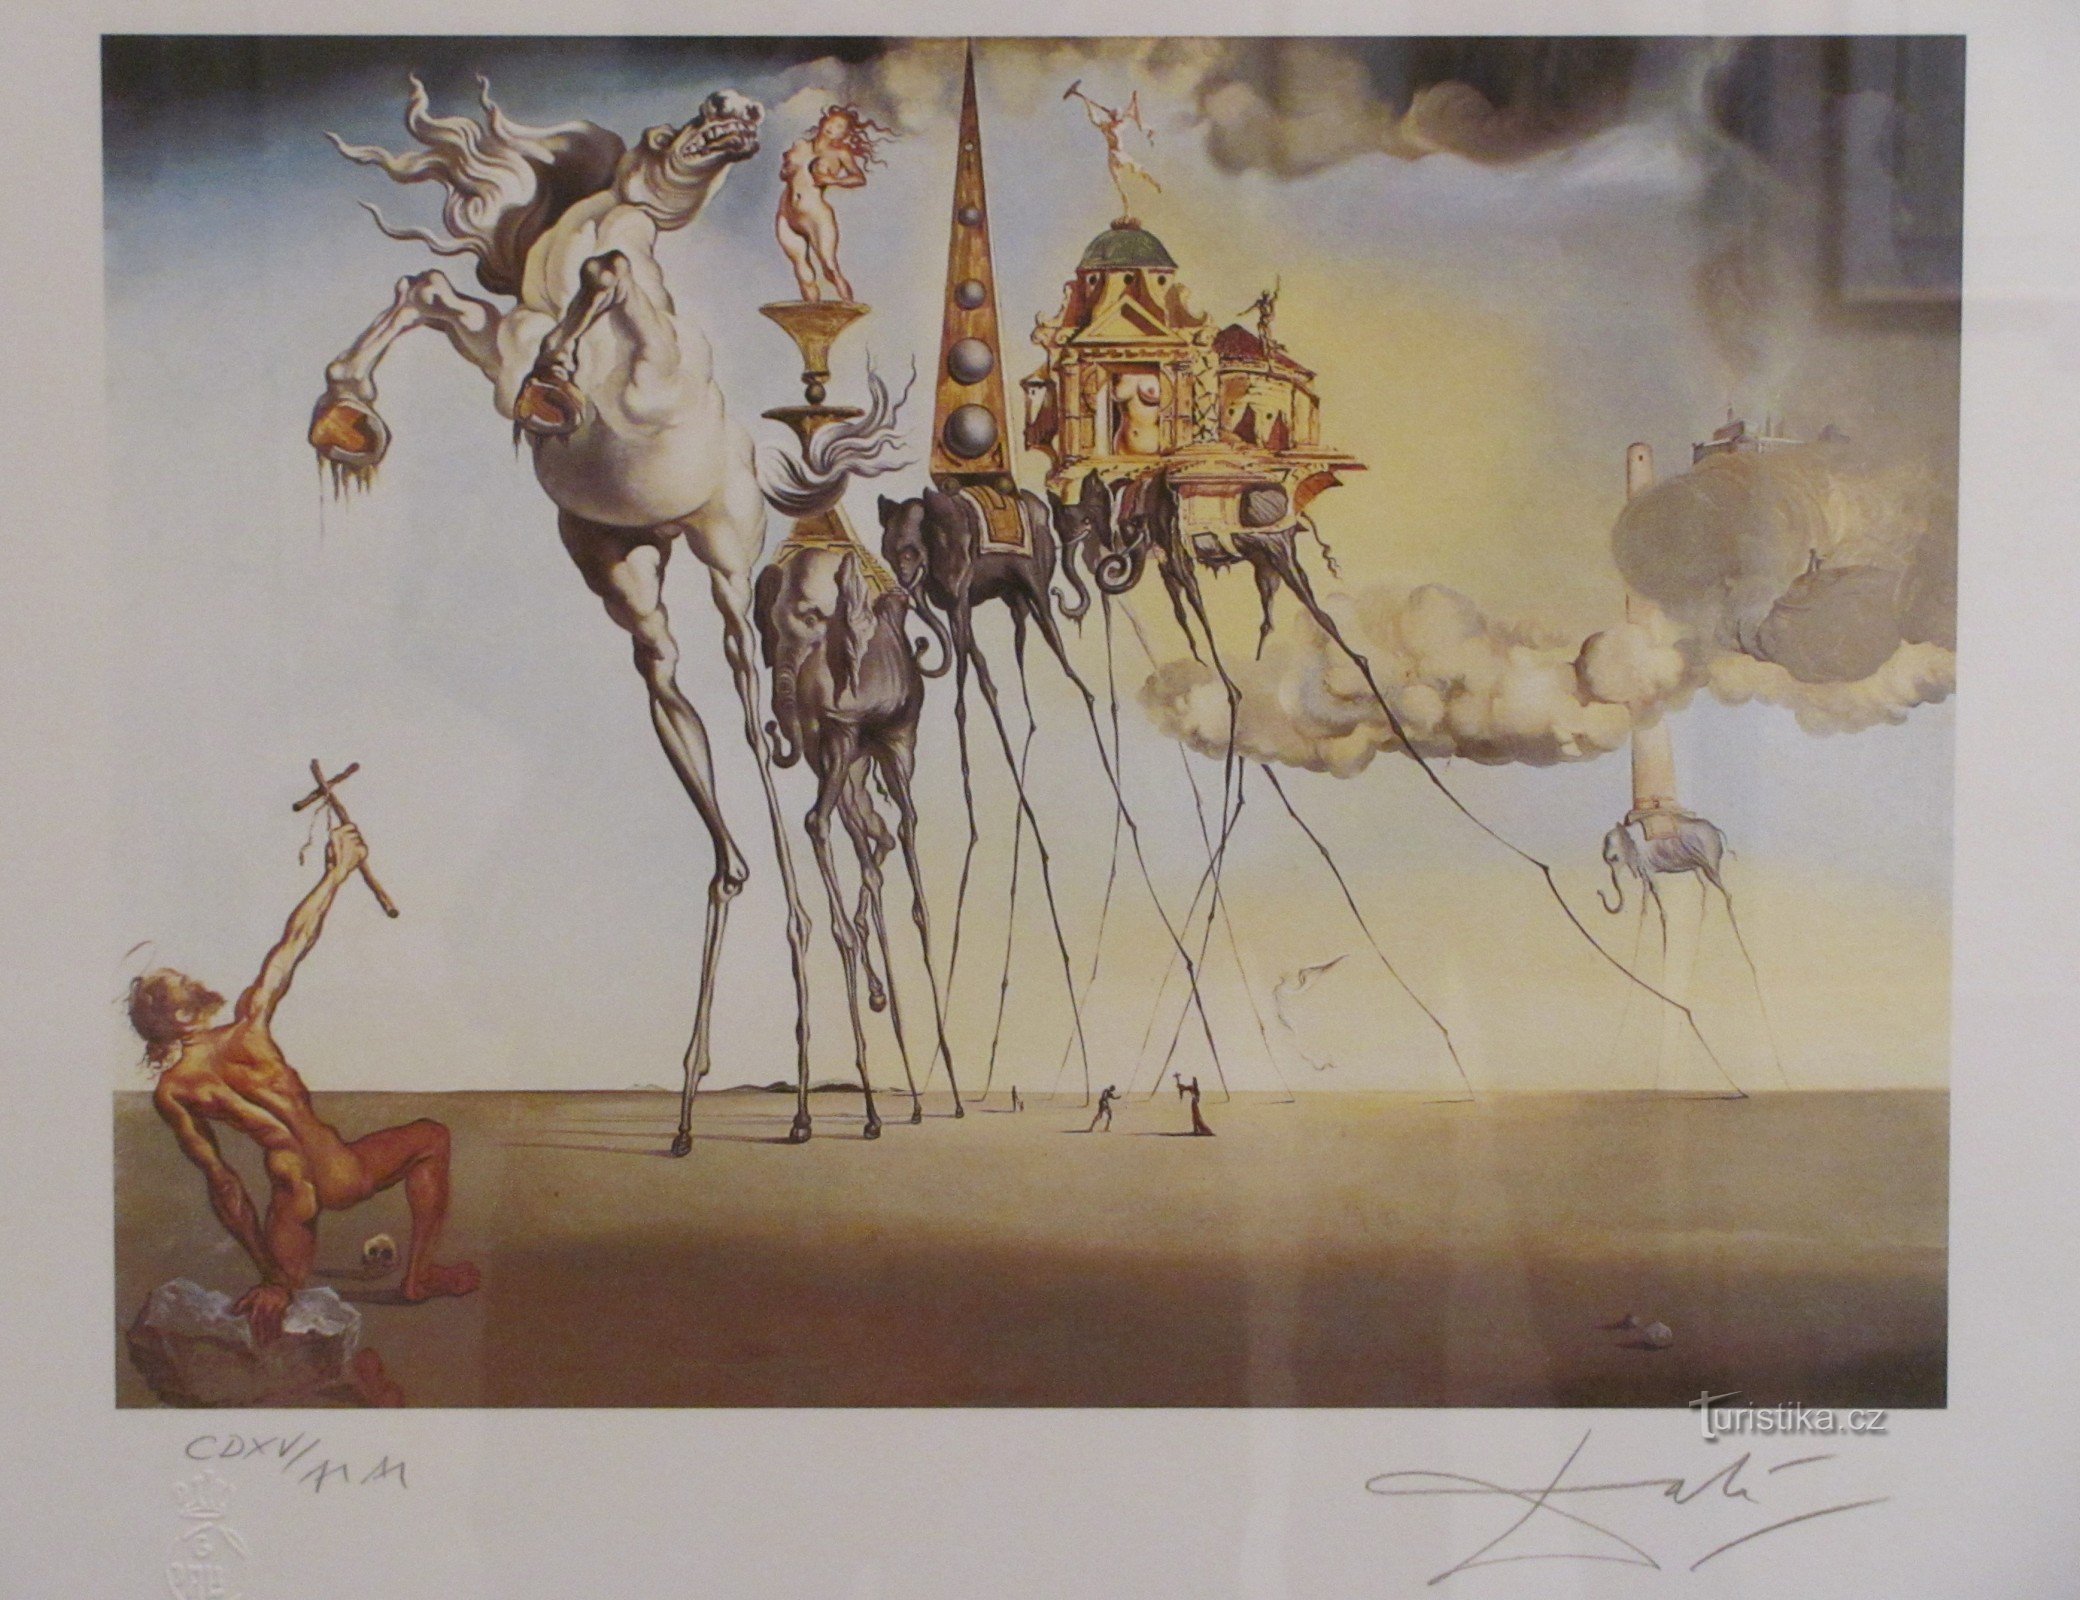 Olomouc - Salvador Dalí / Tuyển chọn từ tác phẩm (Chủ nghĩa siêu thực Tây Ban Nha trong OVM)